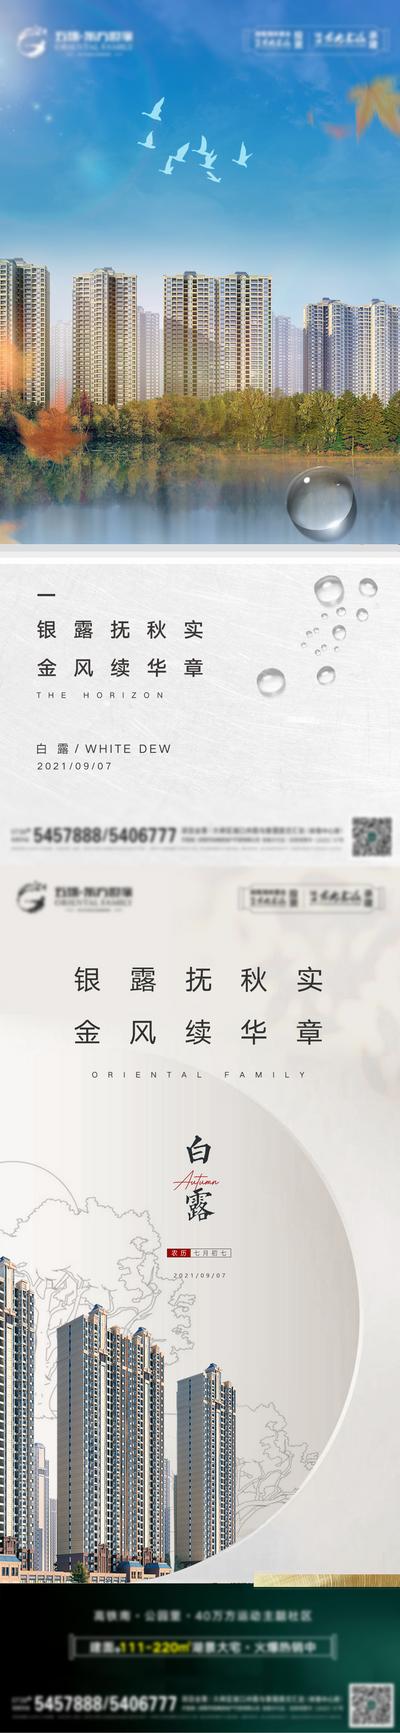 南门网 海报 二十四节气 房地产 白露 枫叶 秋色 露珠